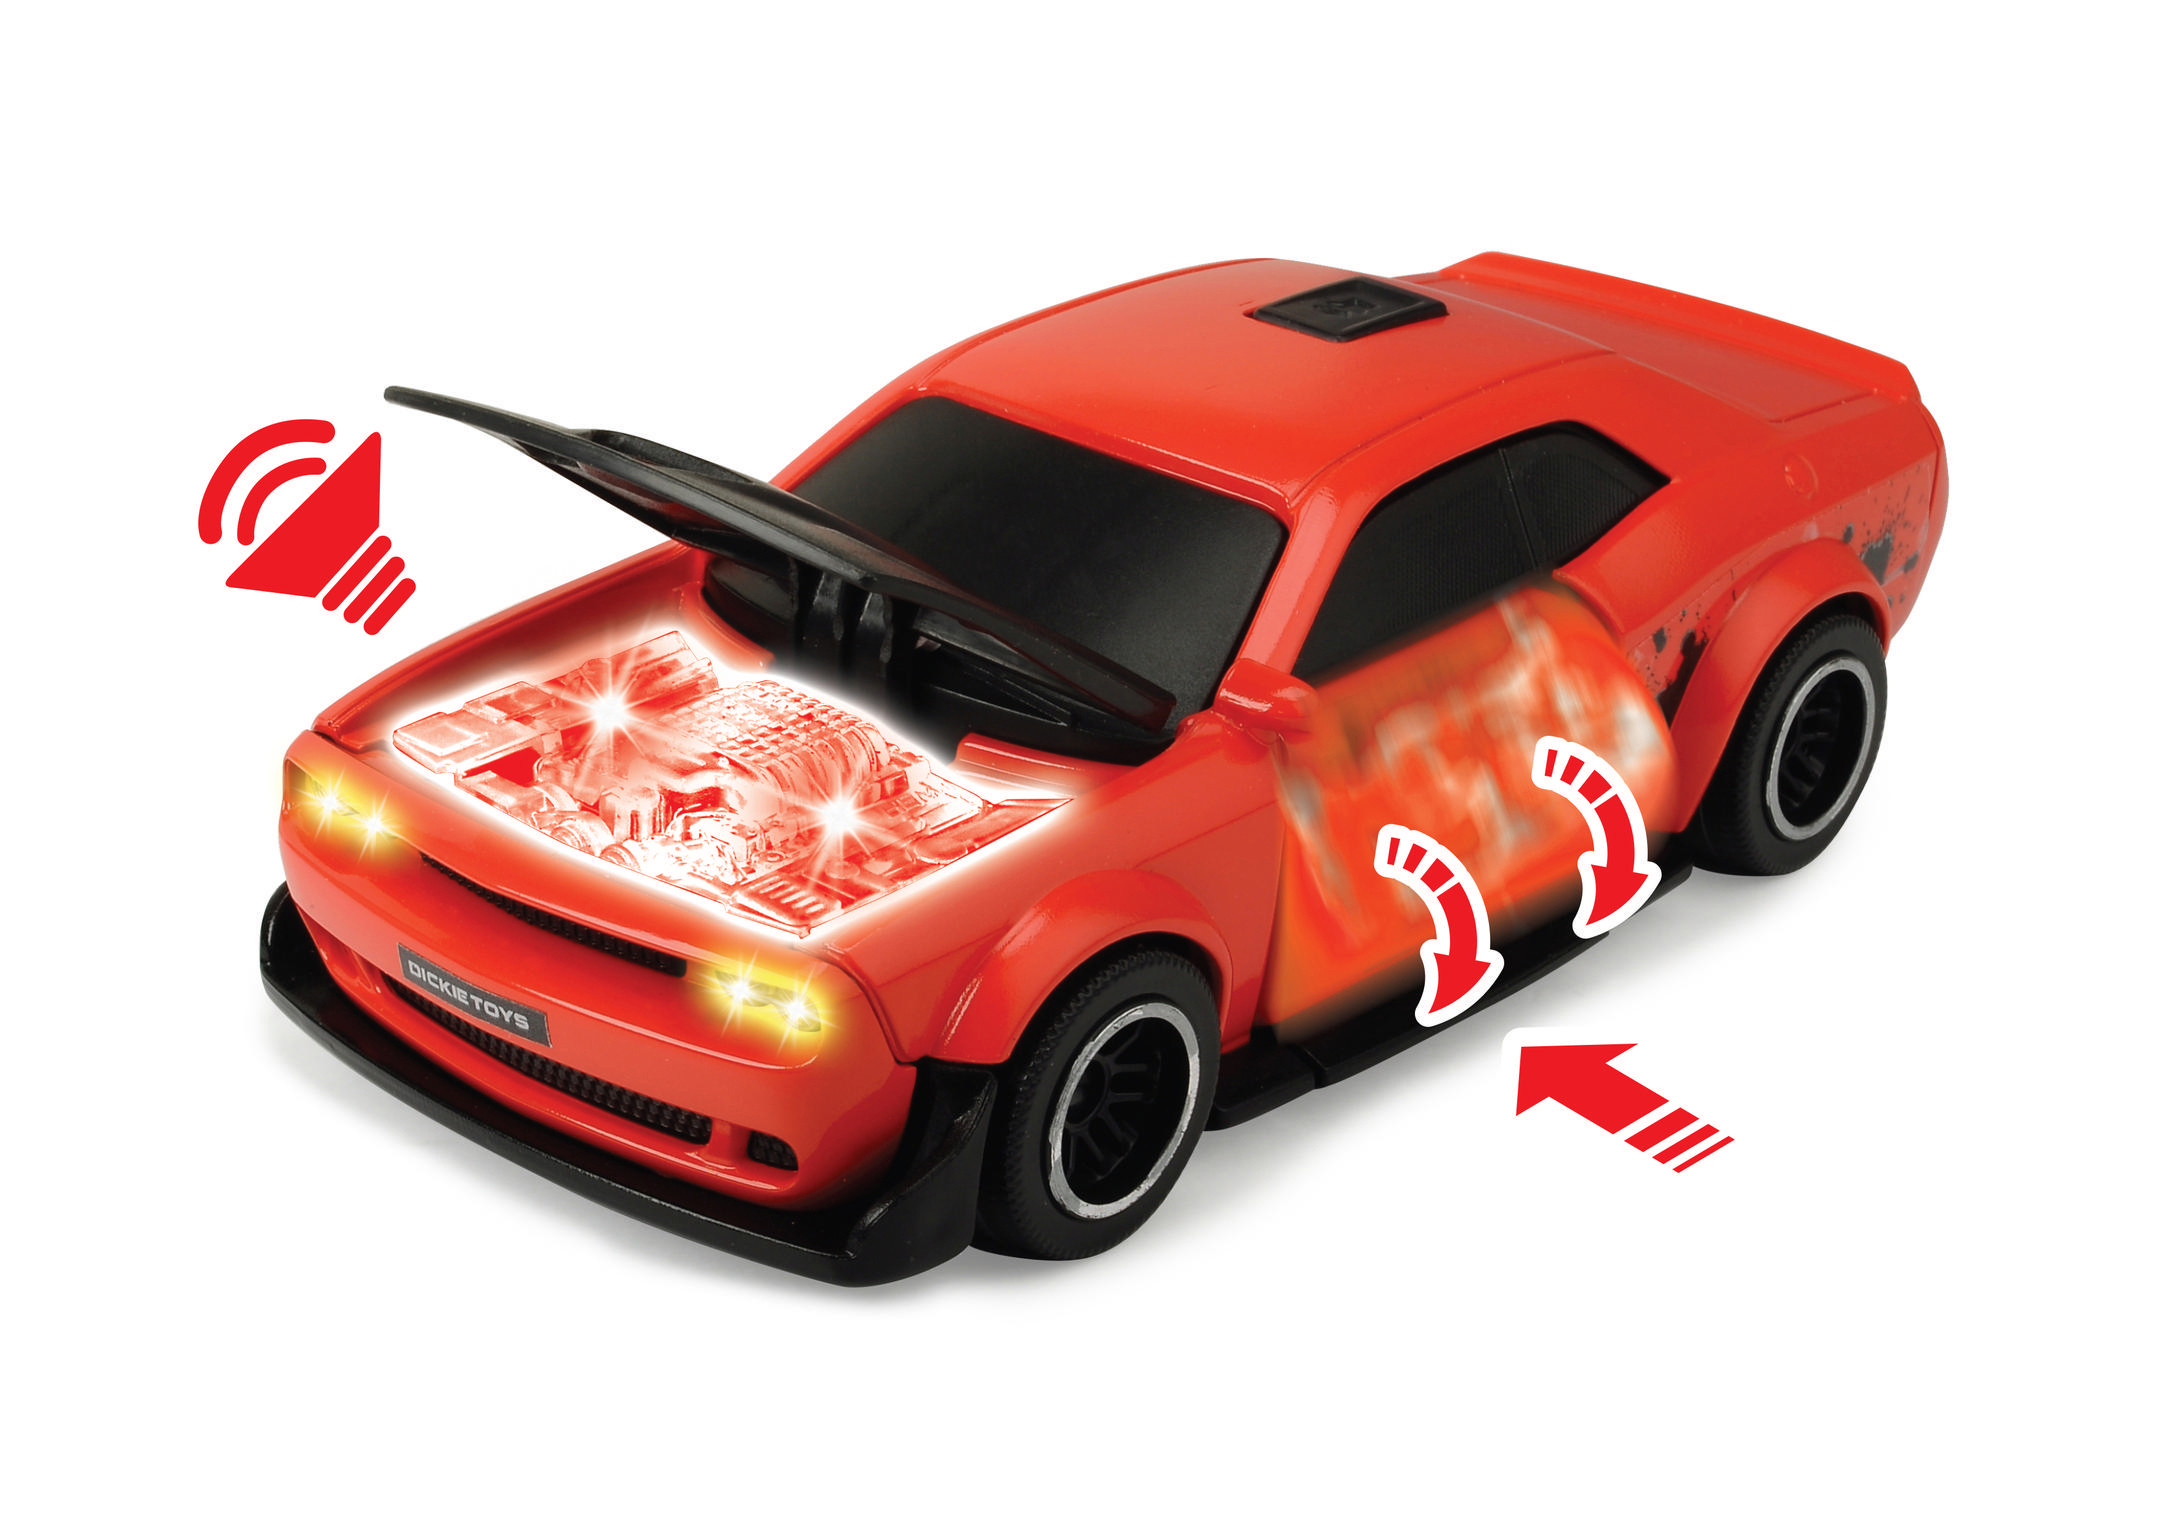 DICKIE-TOYS Dodge Challenger SRT Hellcat, Spielzeugauto Freilauf, Rot/Grün mit Spielzeugauto sortiert 2-fach